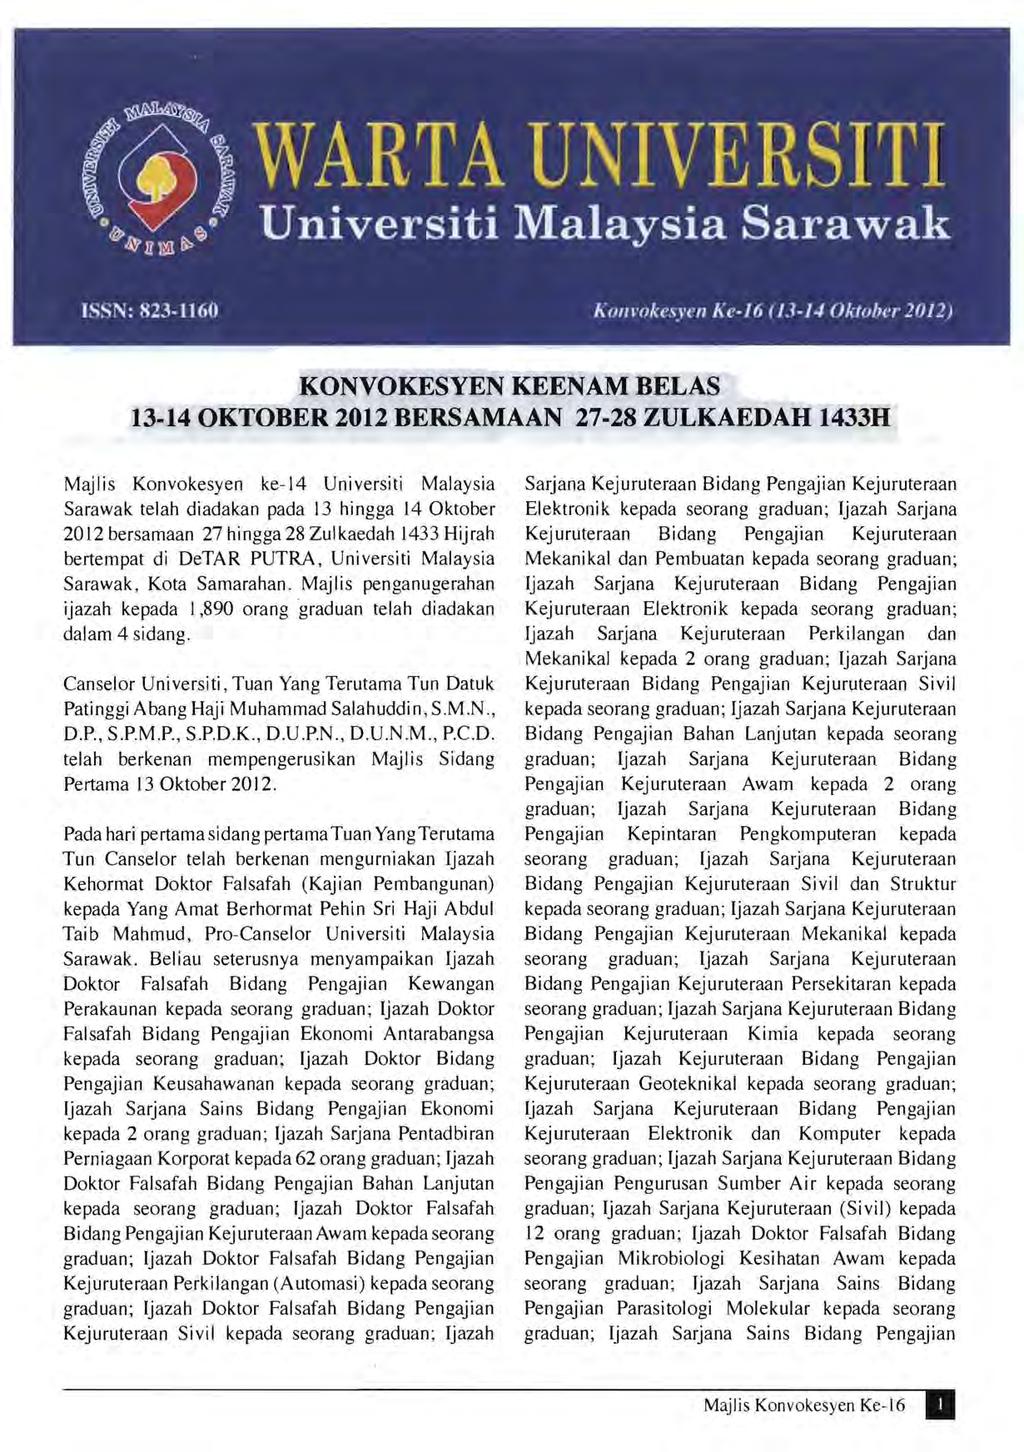 KONVOKESYEN KEENAM BELAS 13-14 OKTOBER 2012 BERSAMAAN 27-28 ZULKAEDAH 1433H Majlis Konvokesyen ke-14 Universiti Malaysia Sarawak telah diadakan pada 13 hingga 14 Oktober 2012 bersamaan 27 hingga 28